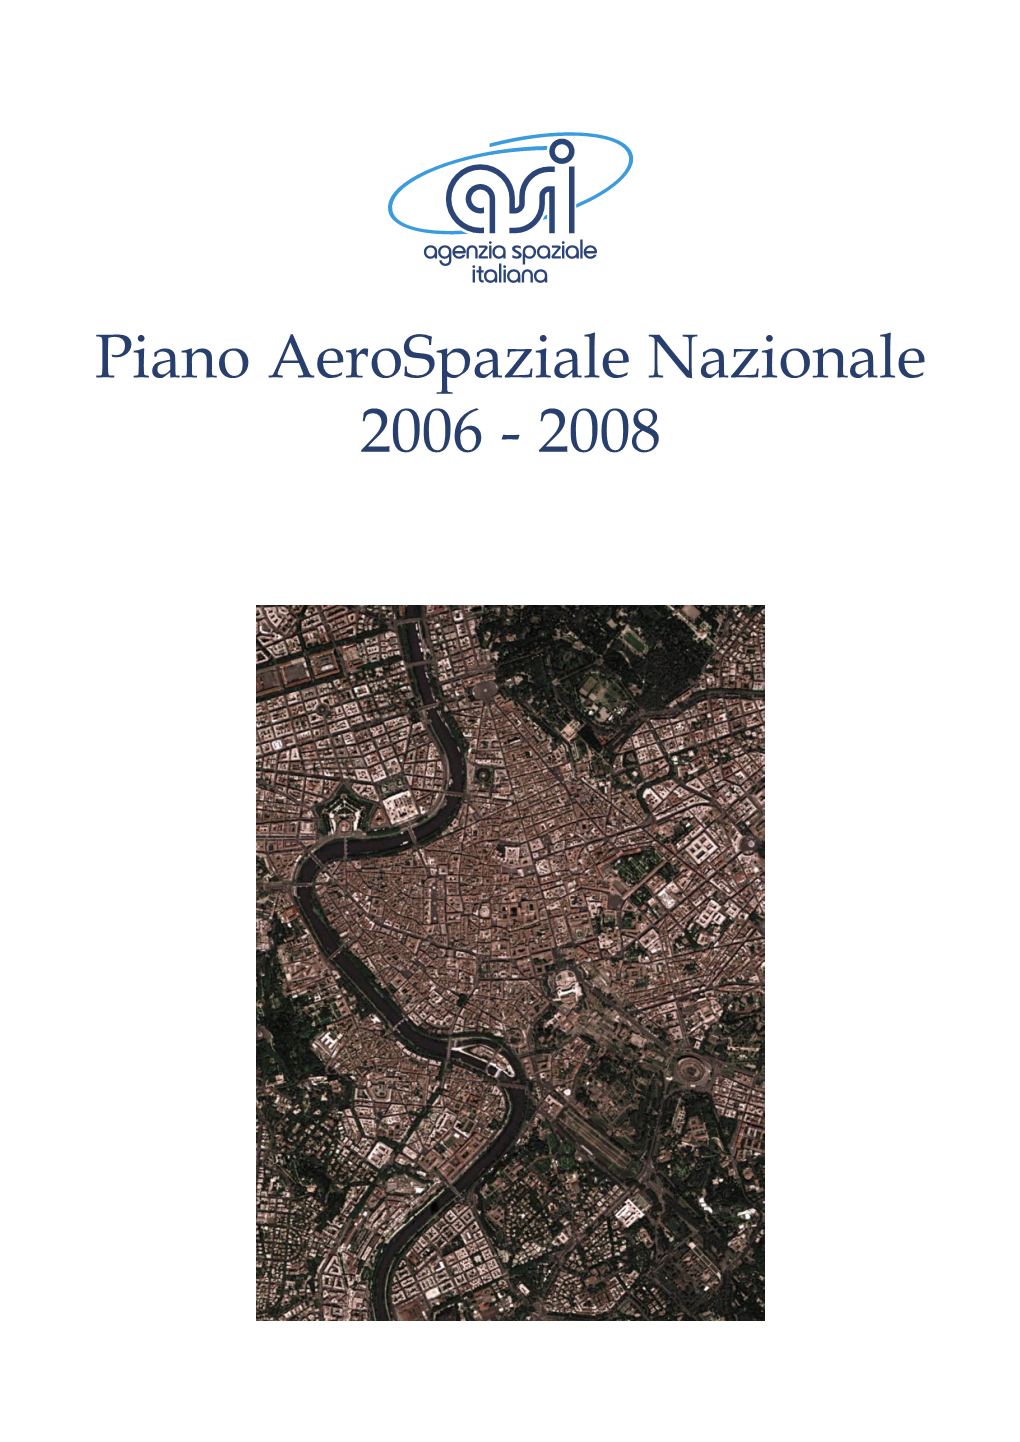 Piano Aerospaziale Nazionale 2006 - 2008